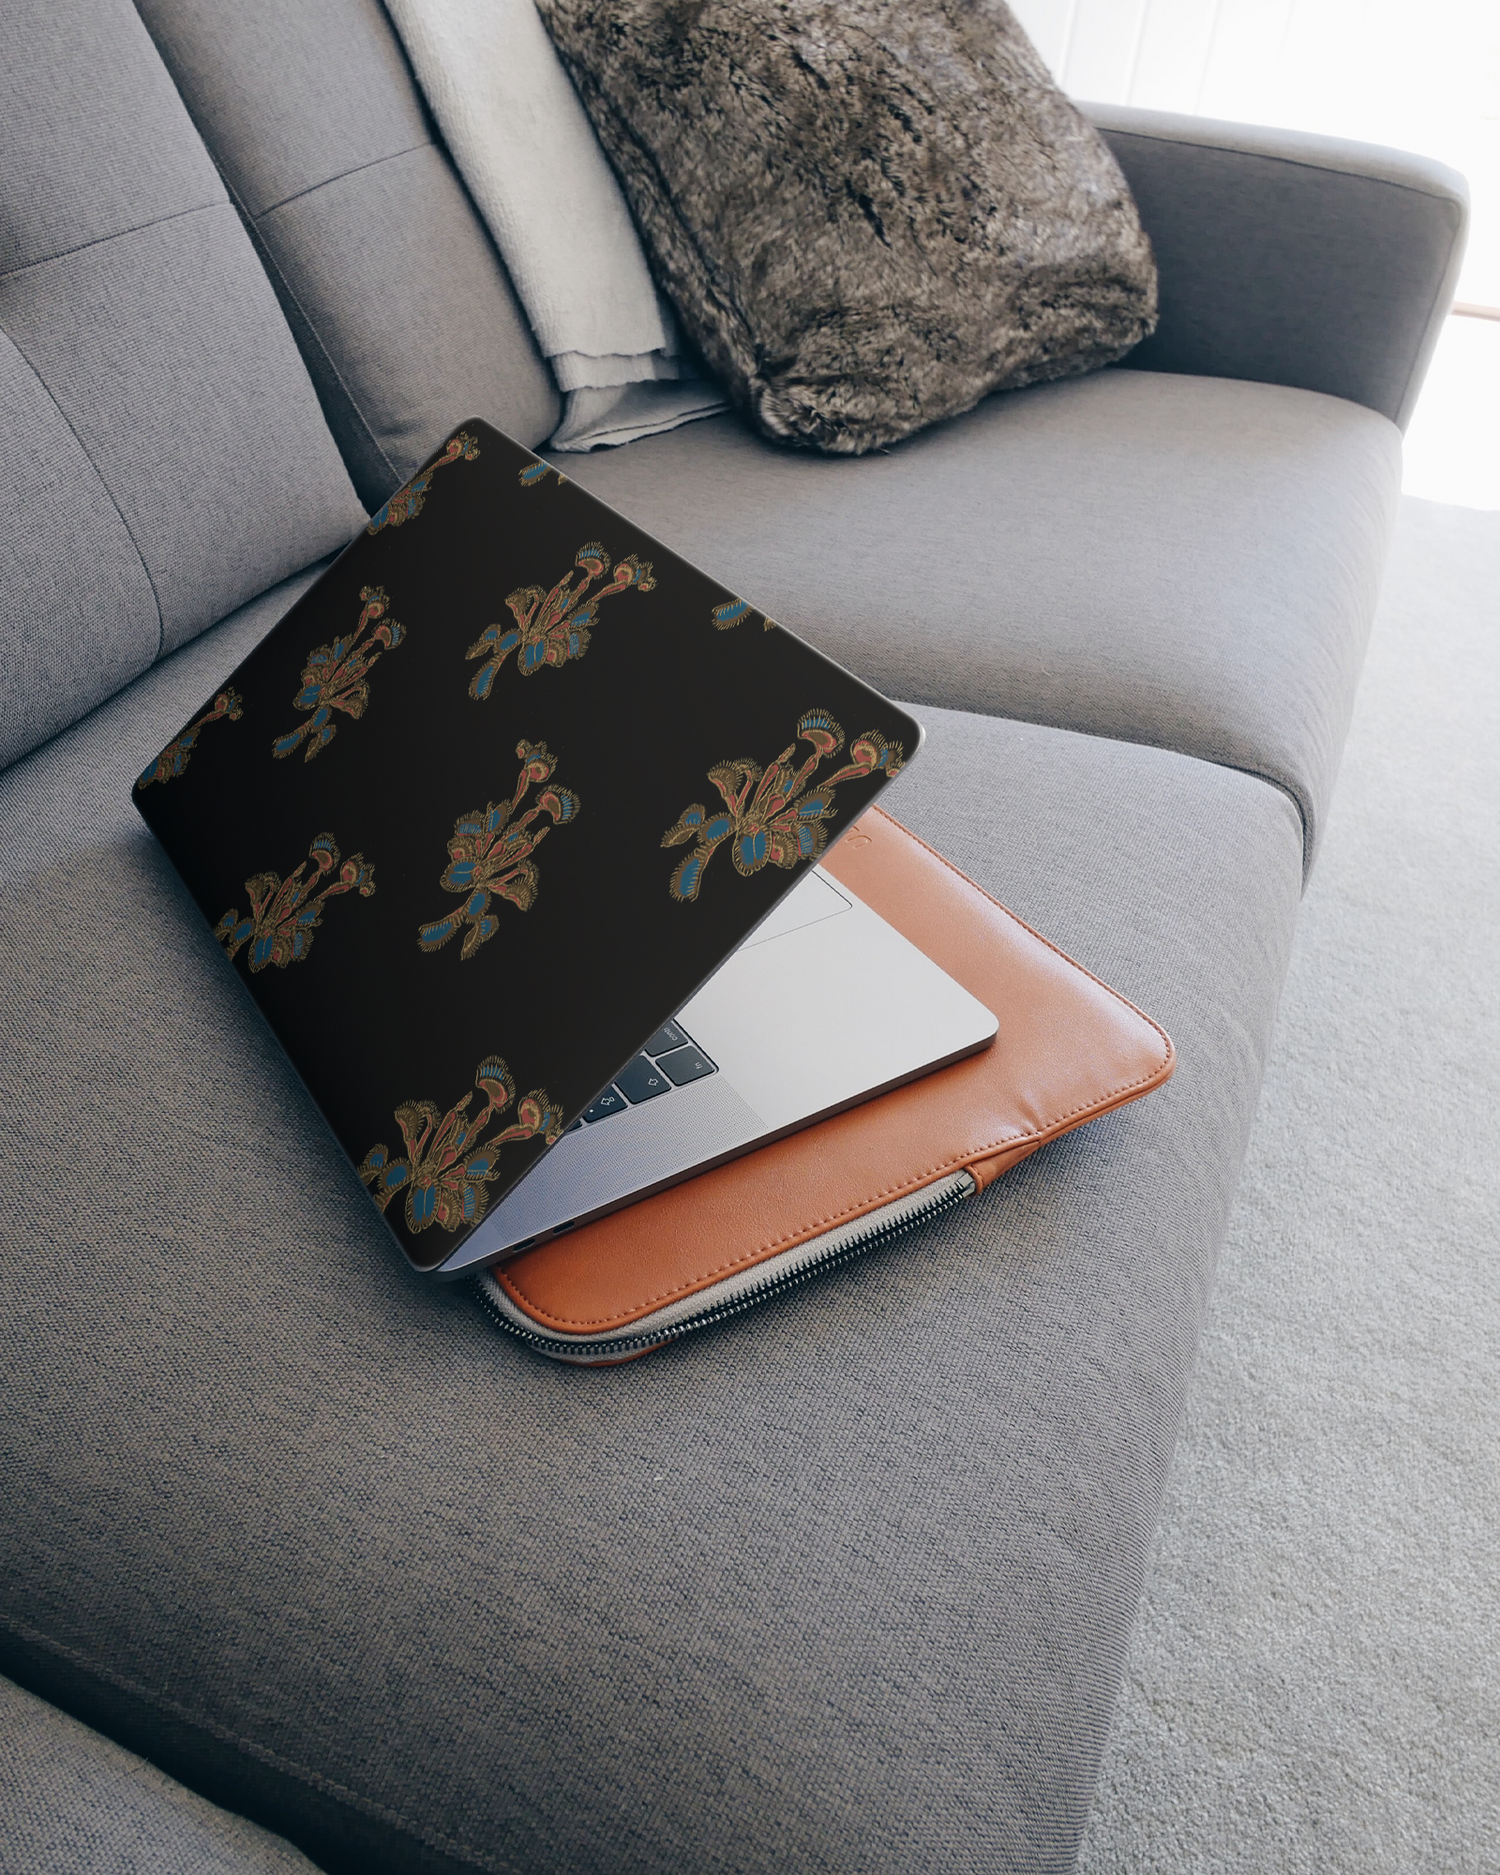 Venus Fly Trap Laptop Aufkleber für 15 Zoll Apple MacBooks auf dem Sofa